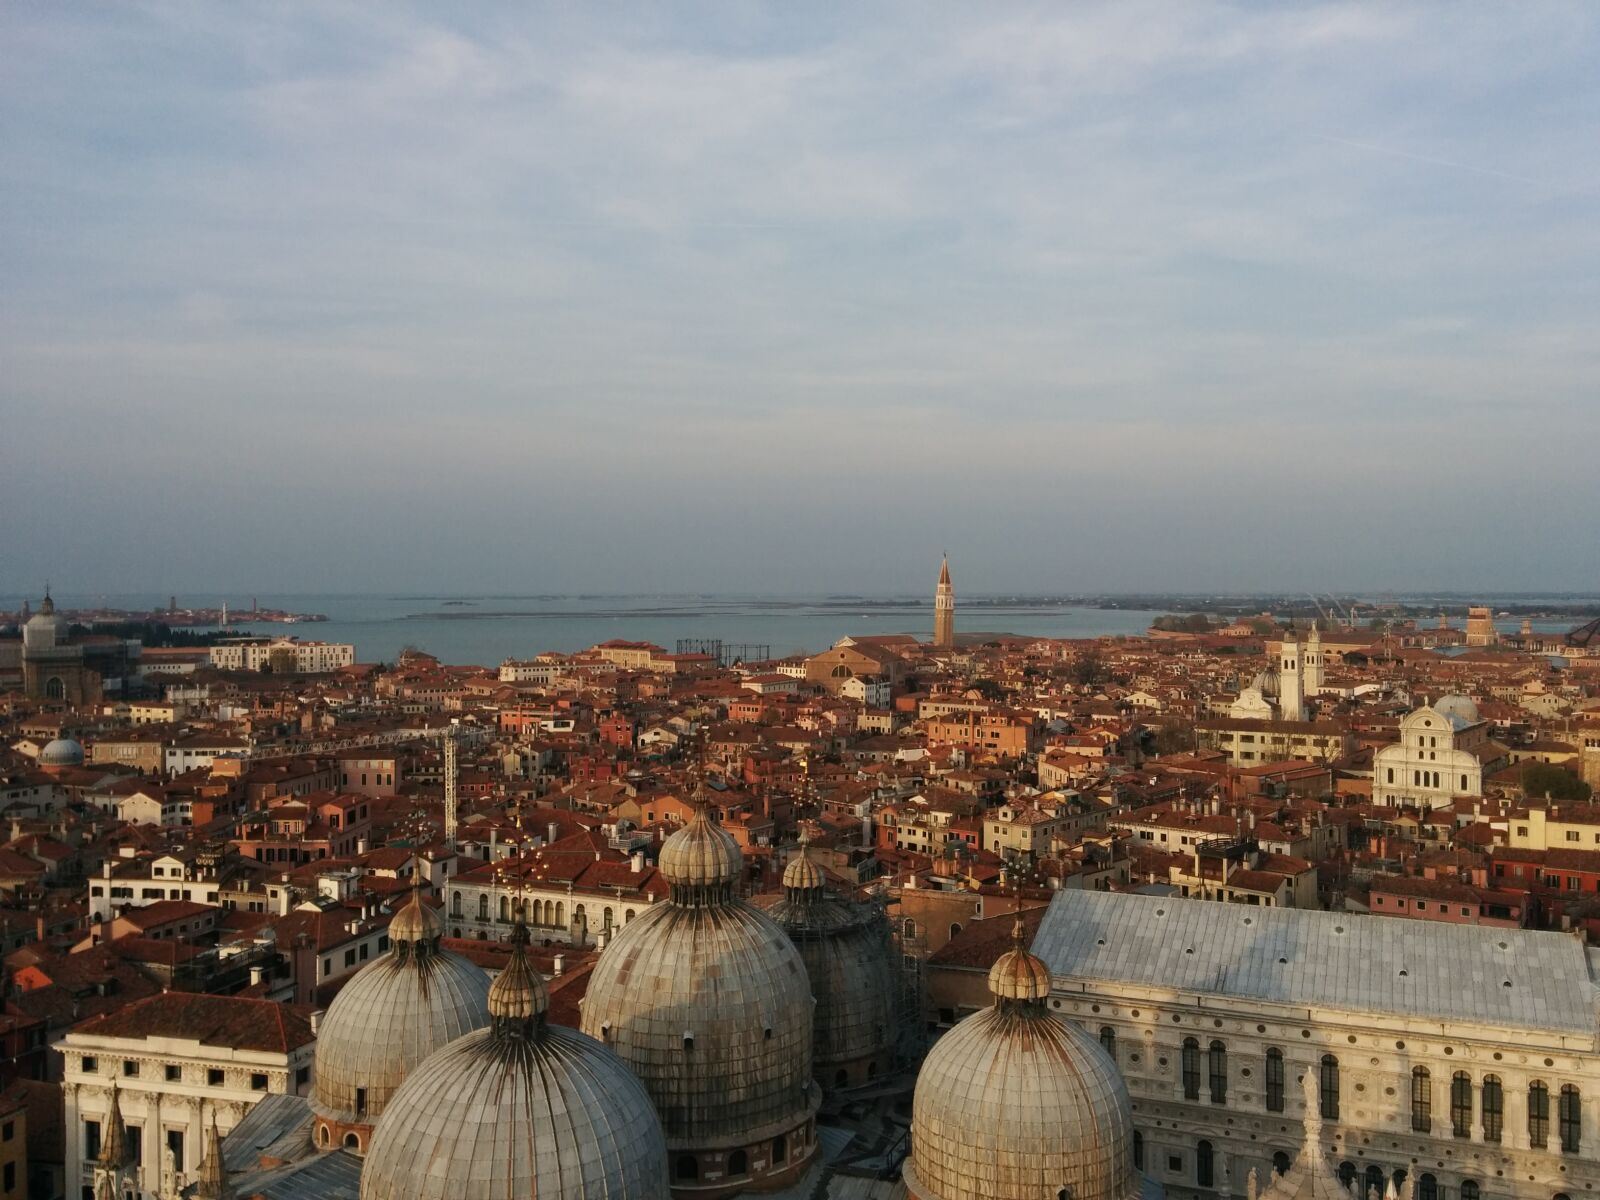 LG Nexus 5 sample photo. Venice, italy, city photography